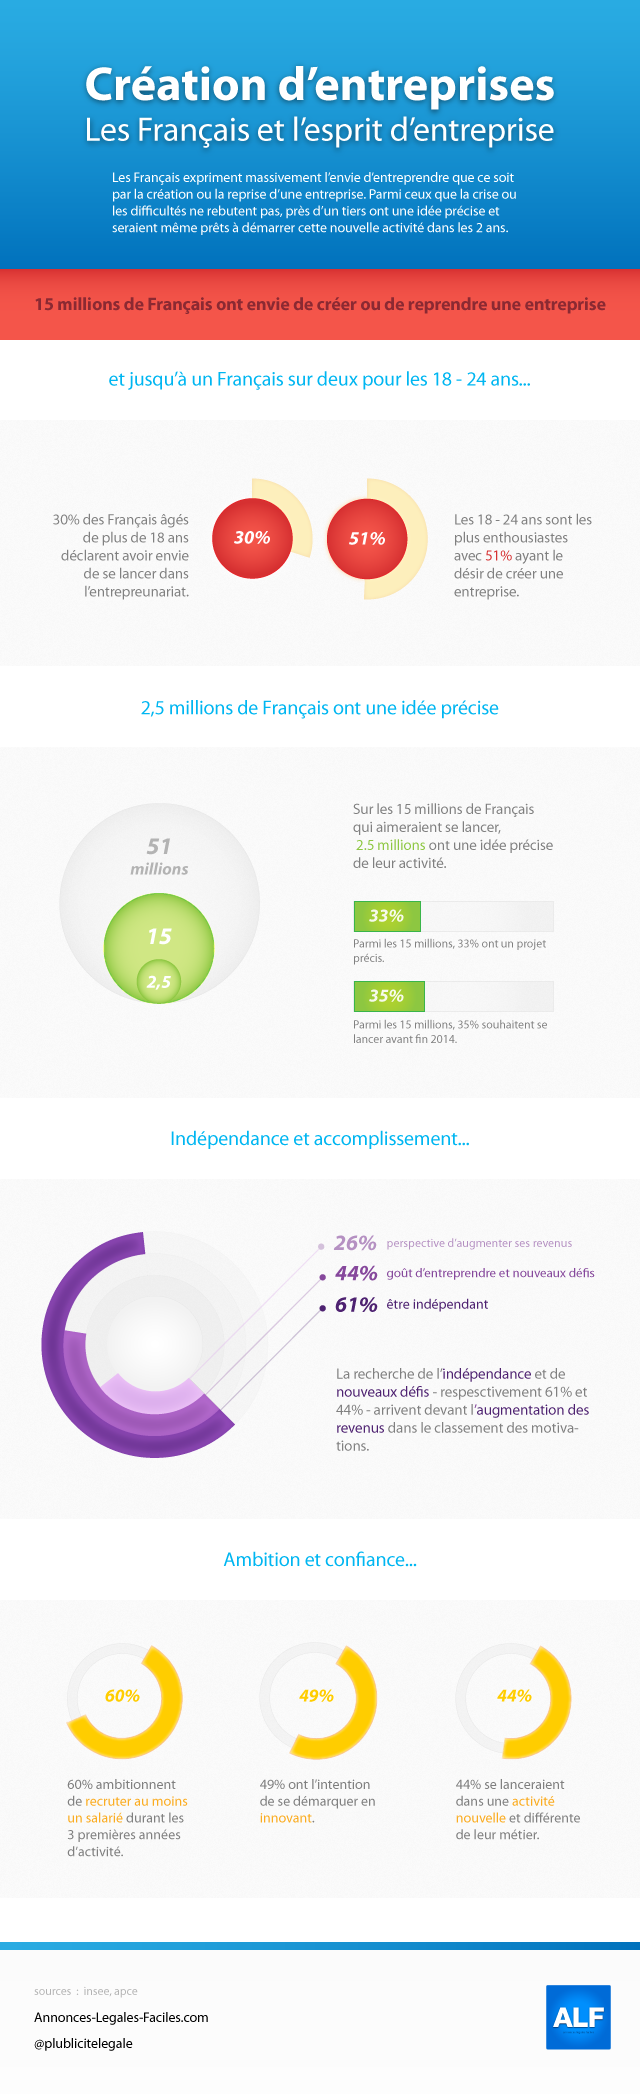 L' esprit d' entreprise en France - Infographique